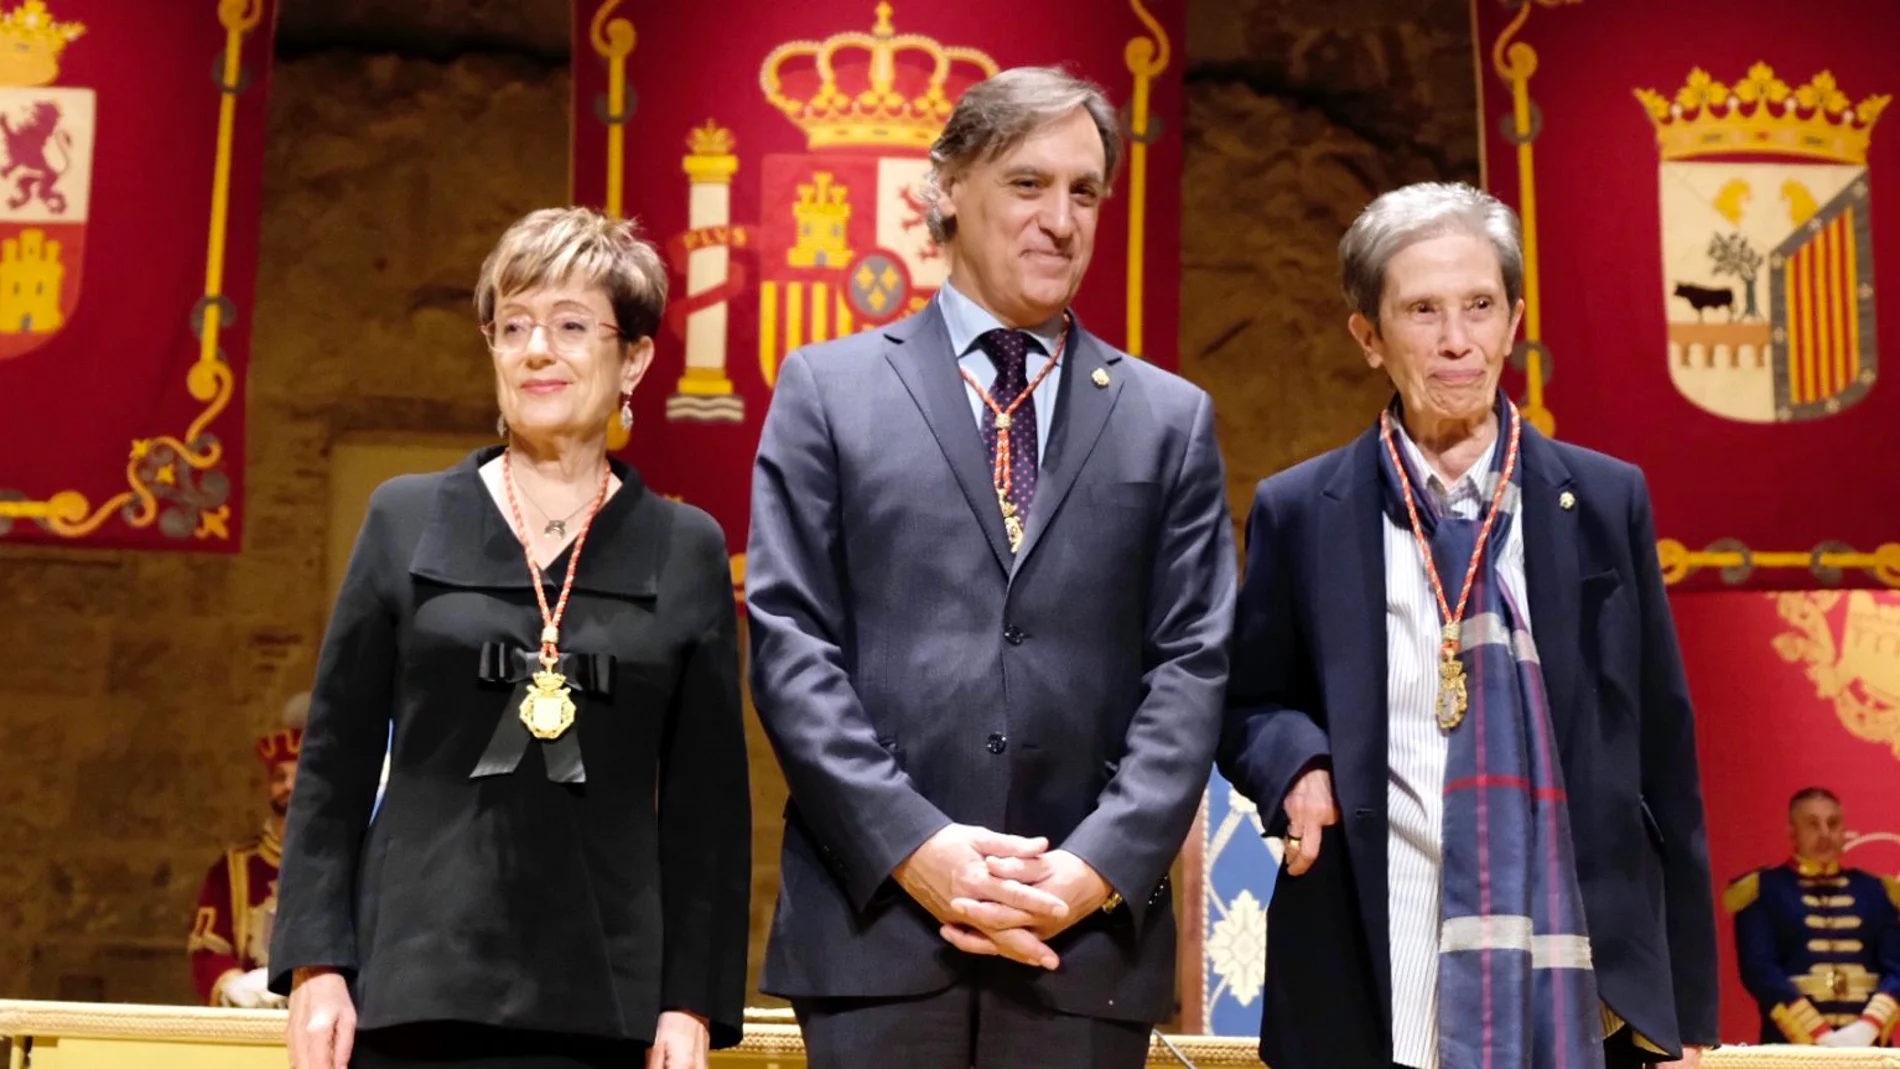 El alcalde de Salamanca entrega las medallas de oro de la ciudad al Centro de Estudios Salmantinos y a Cáritas. En la imagen el alcalde junto a la presidenta del CES, María Jesús Mancho y a Carmen Calzada de Cáritas Salamanca